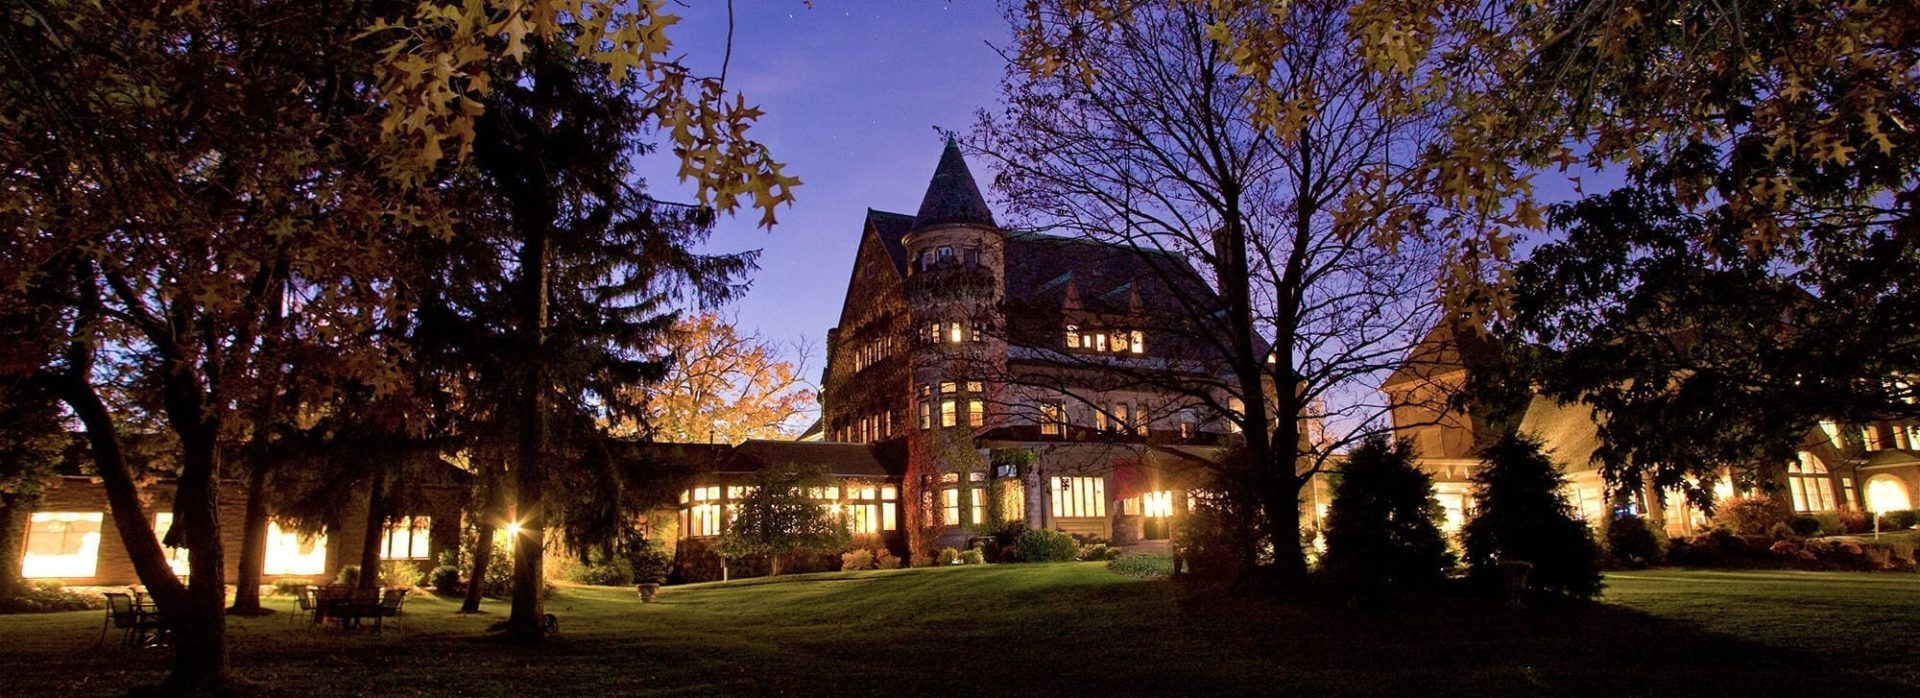 Finger Lakes Hotels - Castles in New York | Belhurst Castle